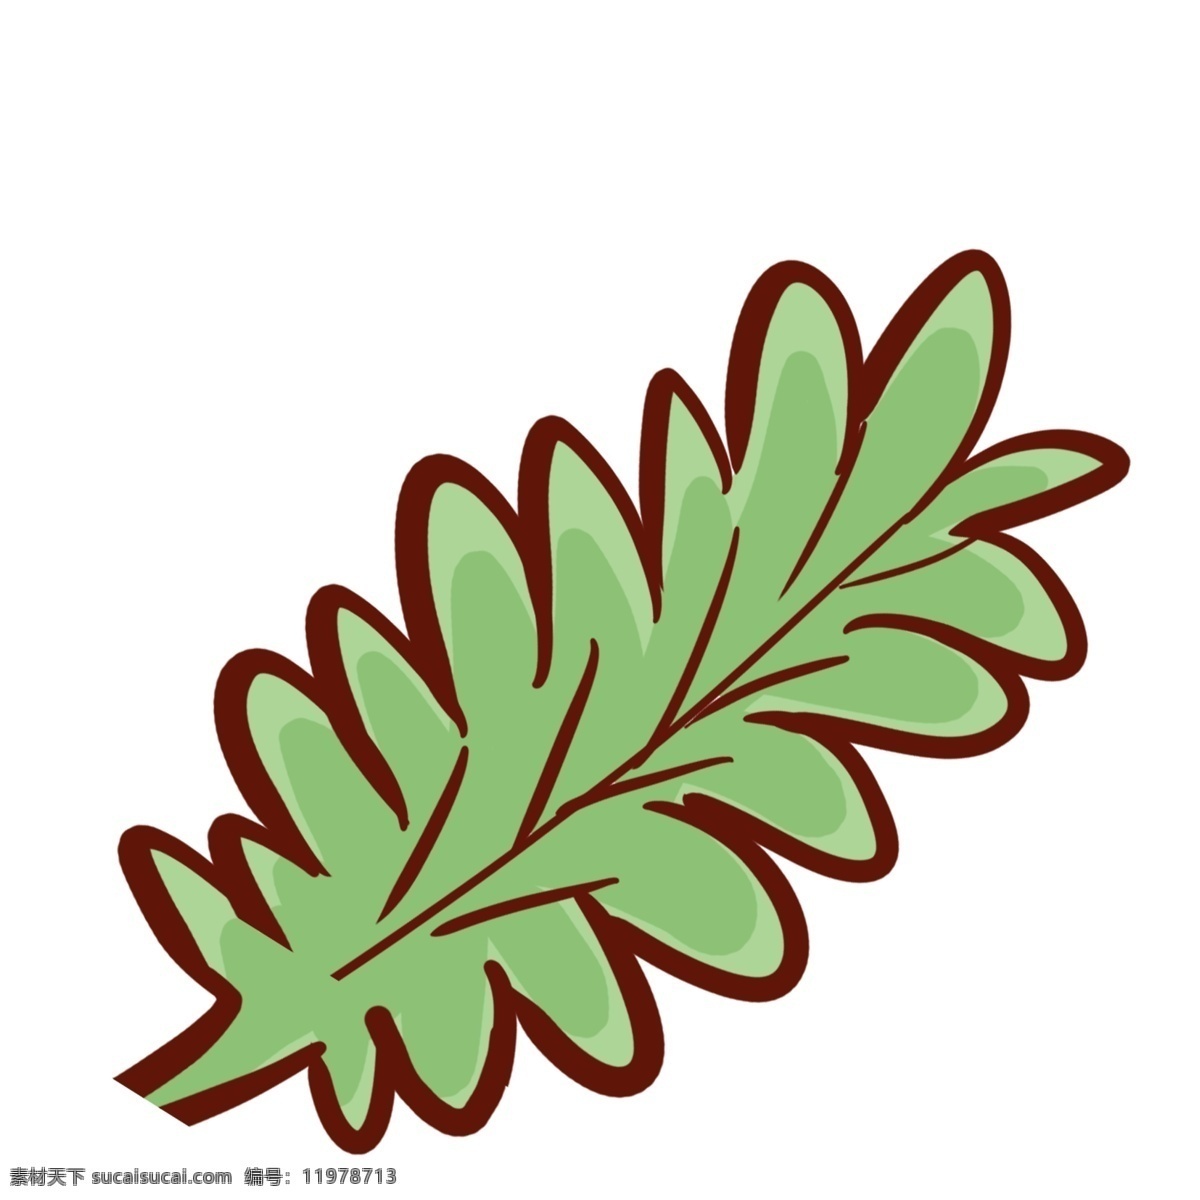 简笔 植物 树叶 插画 绿色 卡通 彩色 小清新 创意 手绘 绘画元素 现代 简约 装饰 图案